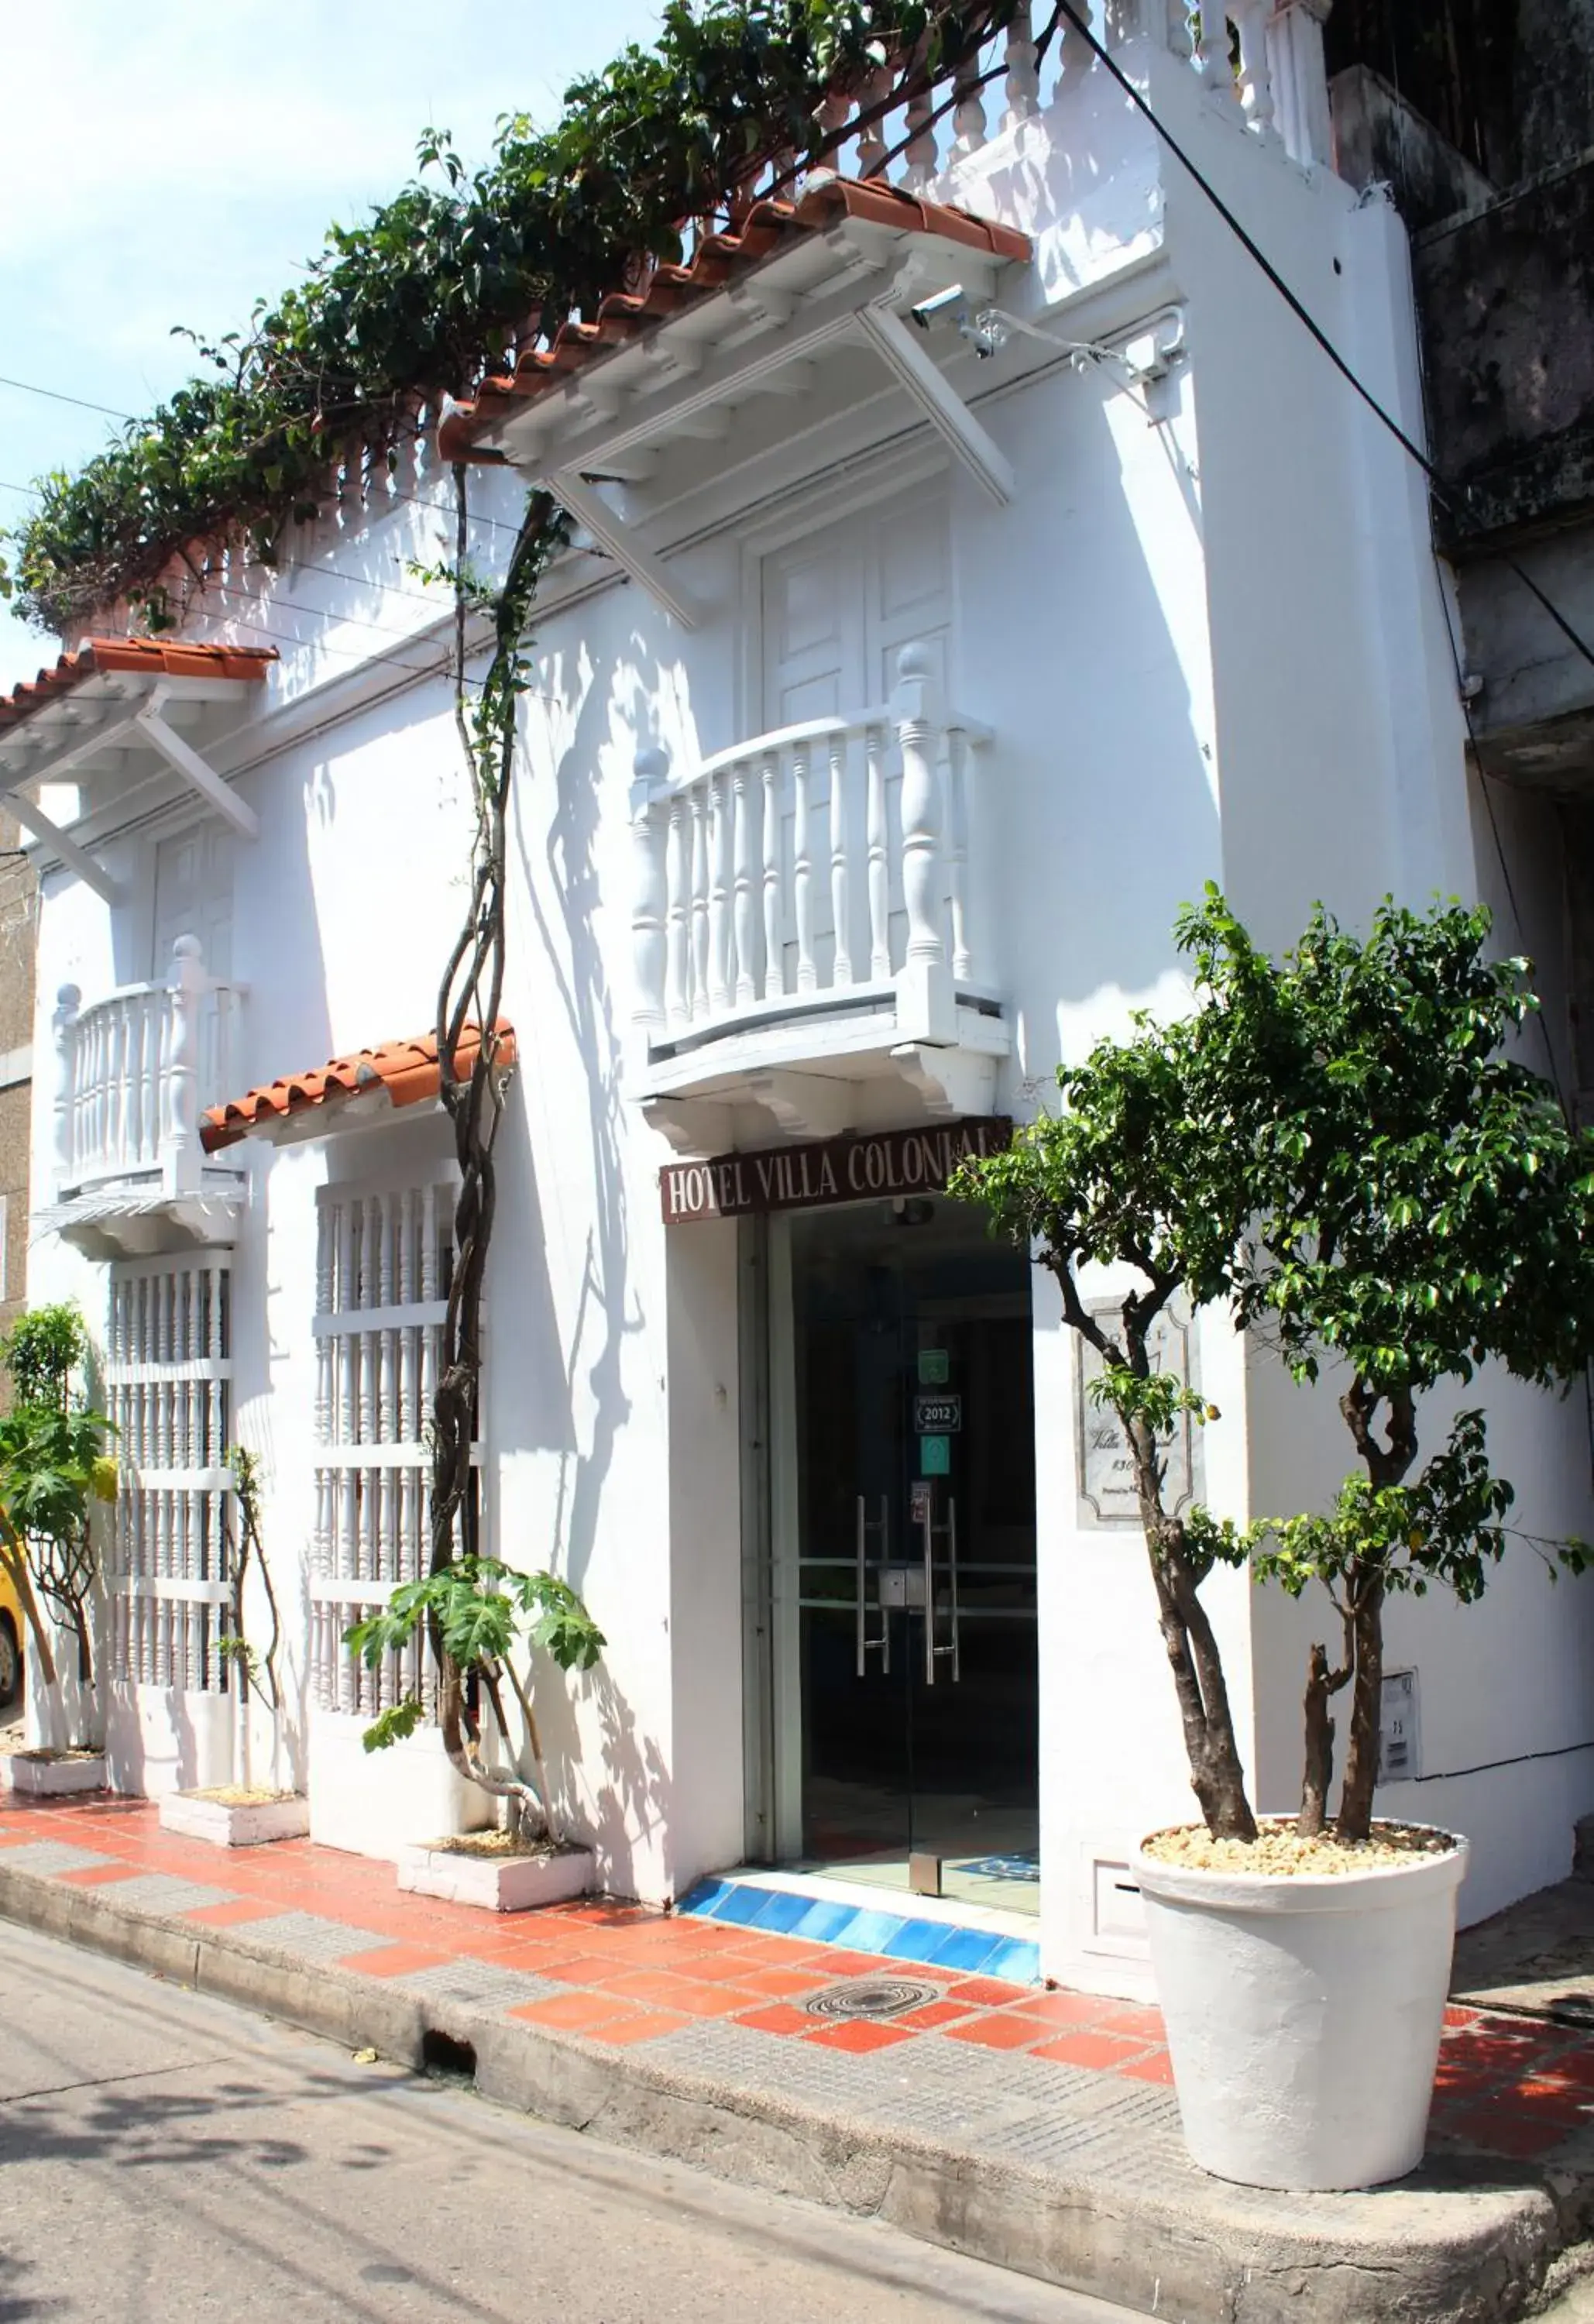 Facade/entrance, Patio/Outdoor Area in Hotel Villa Colonial